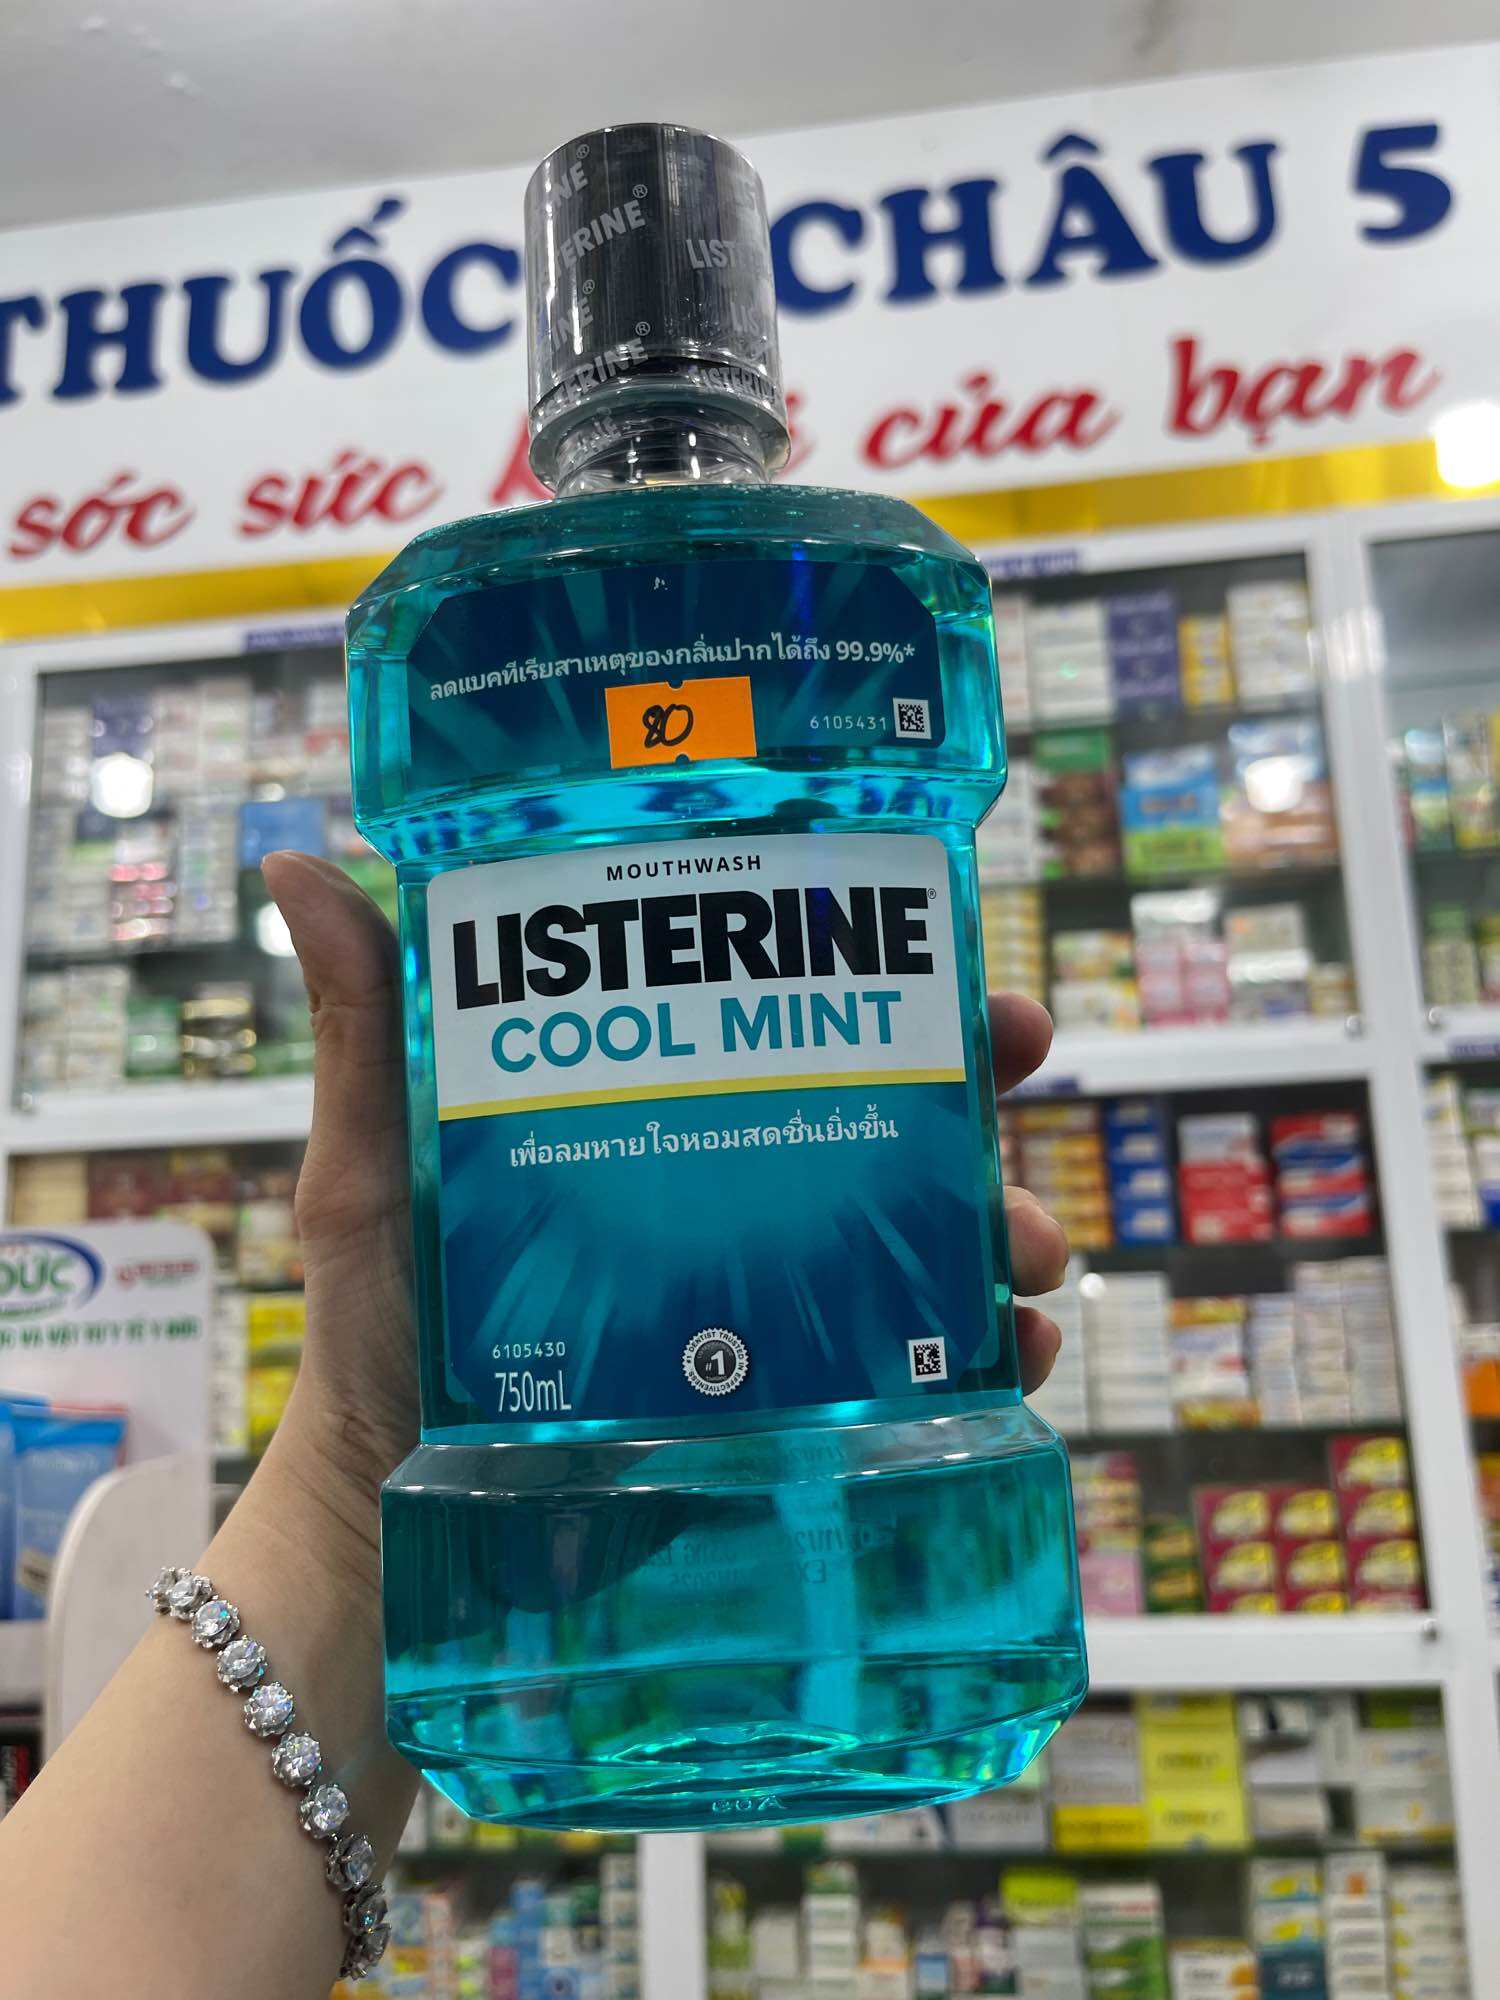 Listerine cool mint 750ml súc miệng